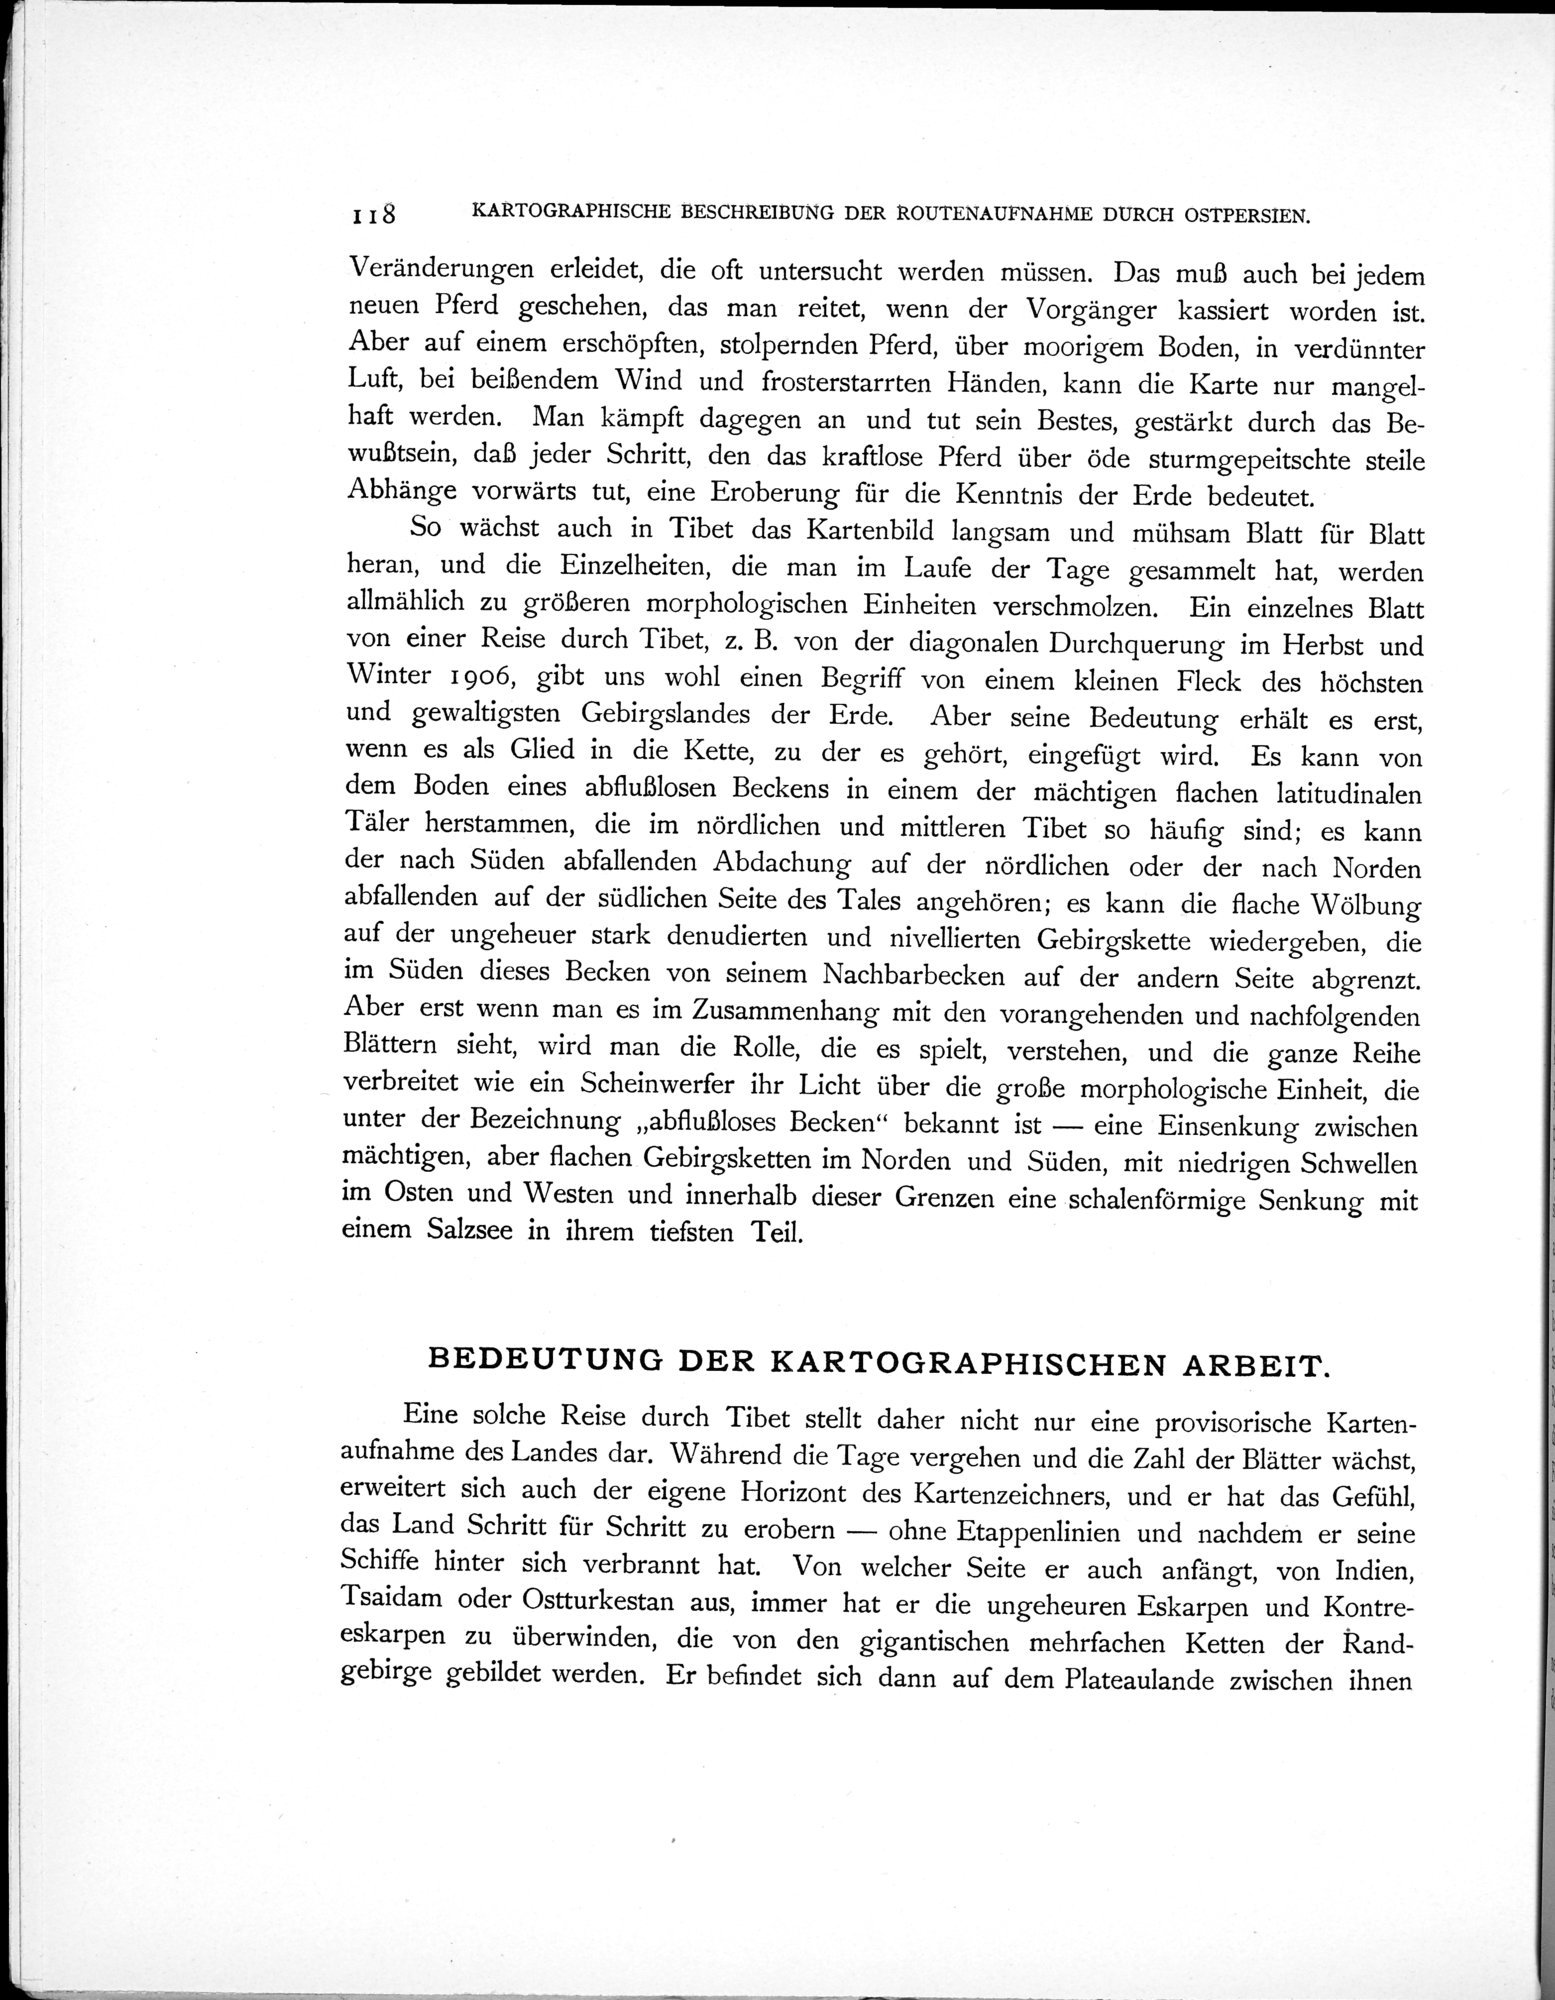 Eine Routenaufnahme durch Ostpersien : vol.2 / Page 172 (Grayscale High Resolution Image)